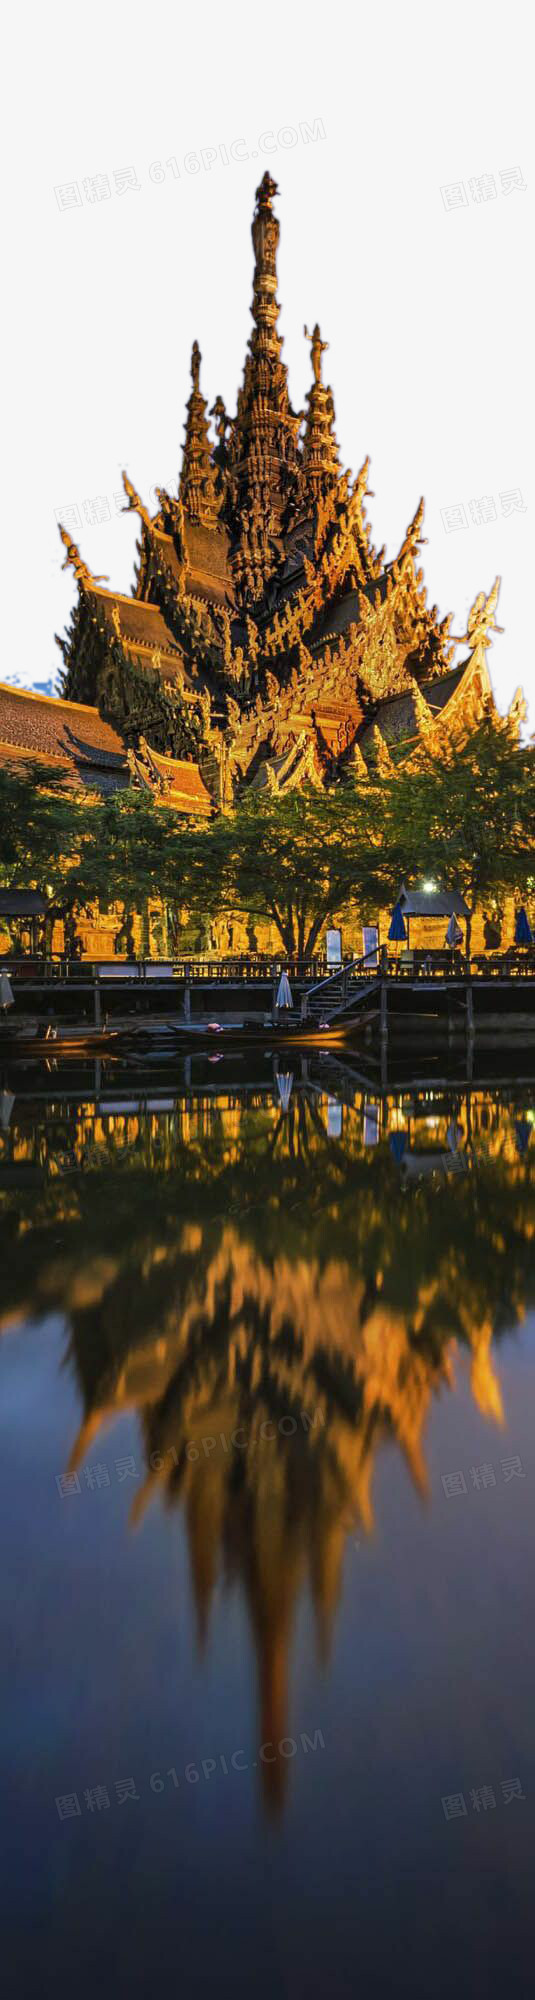 泰国尖顶佛教寺庙